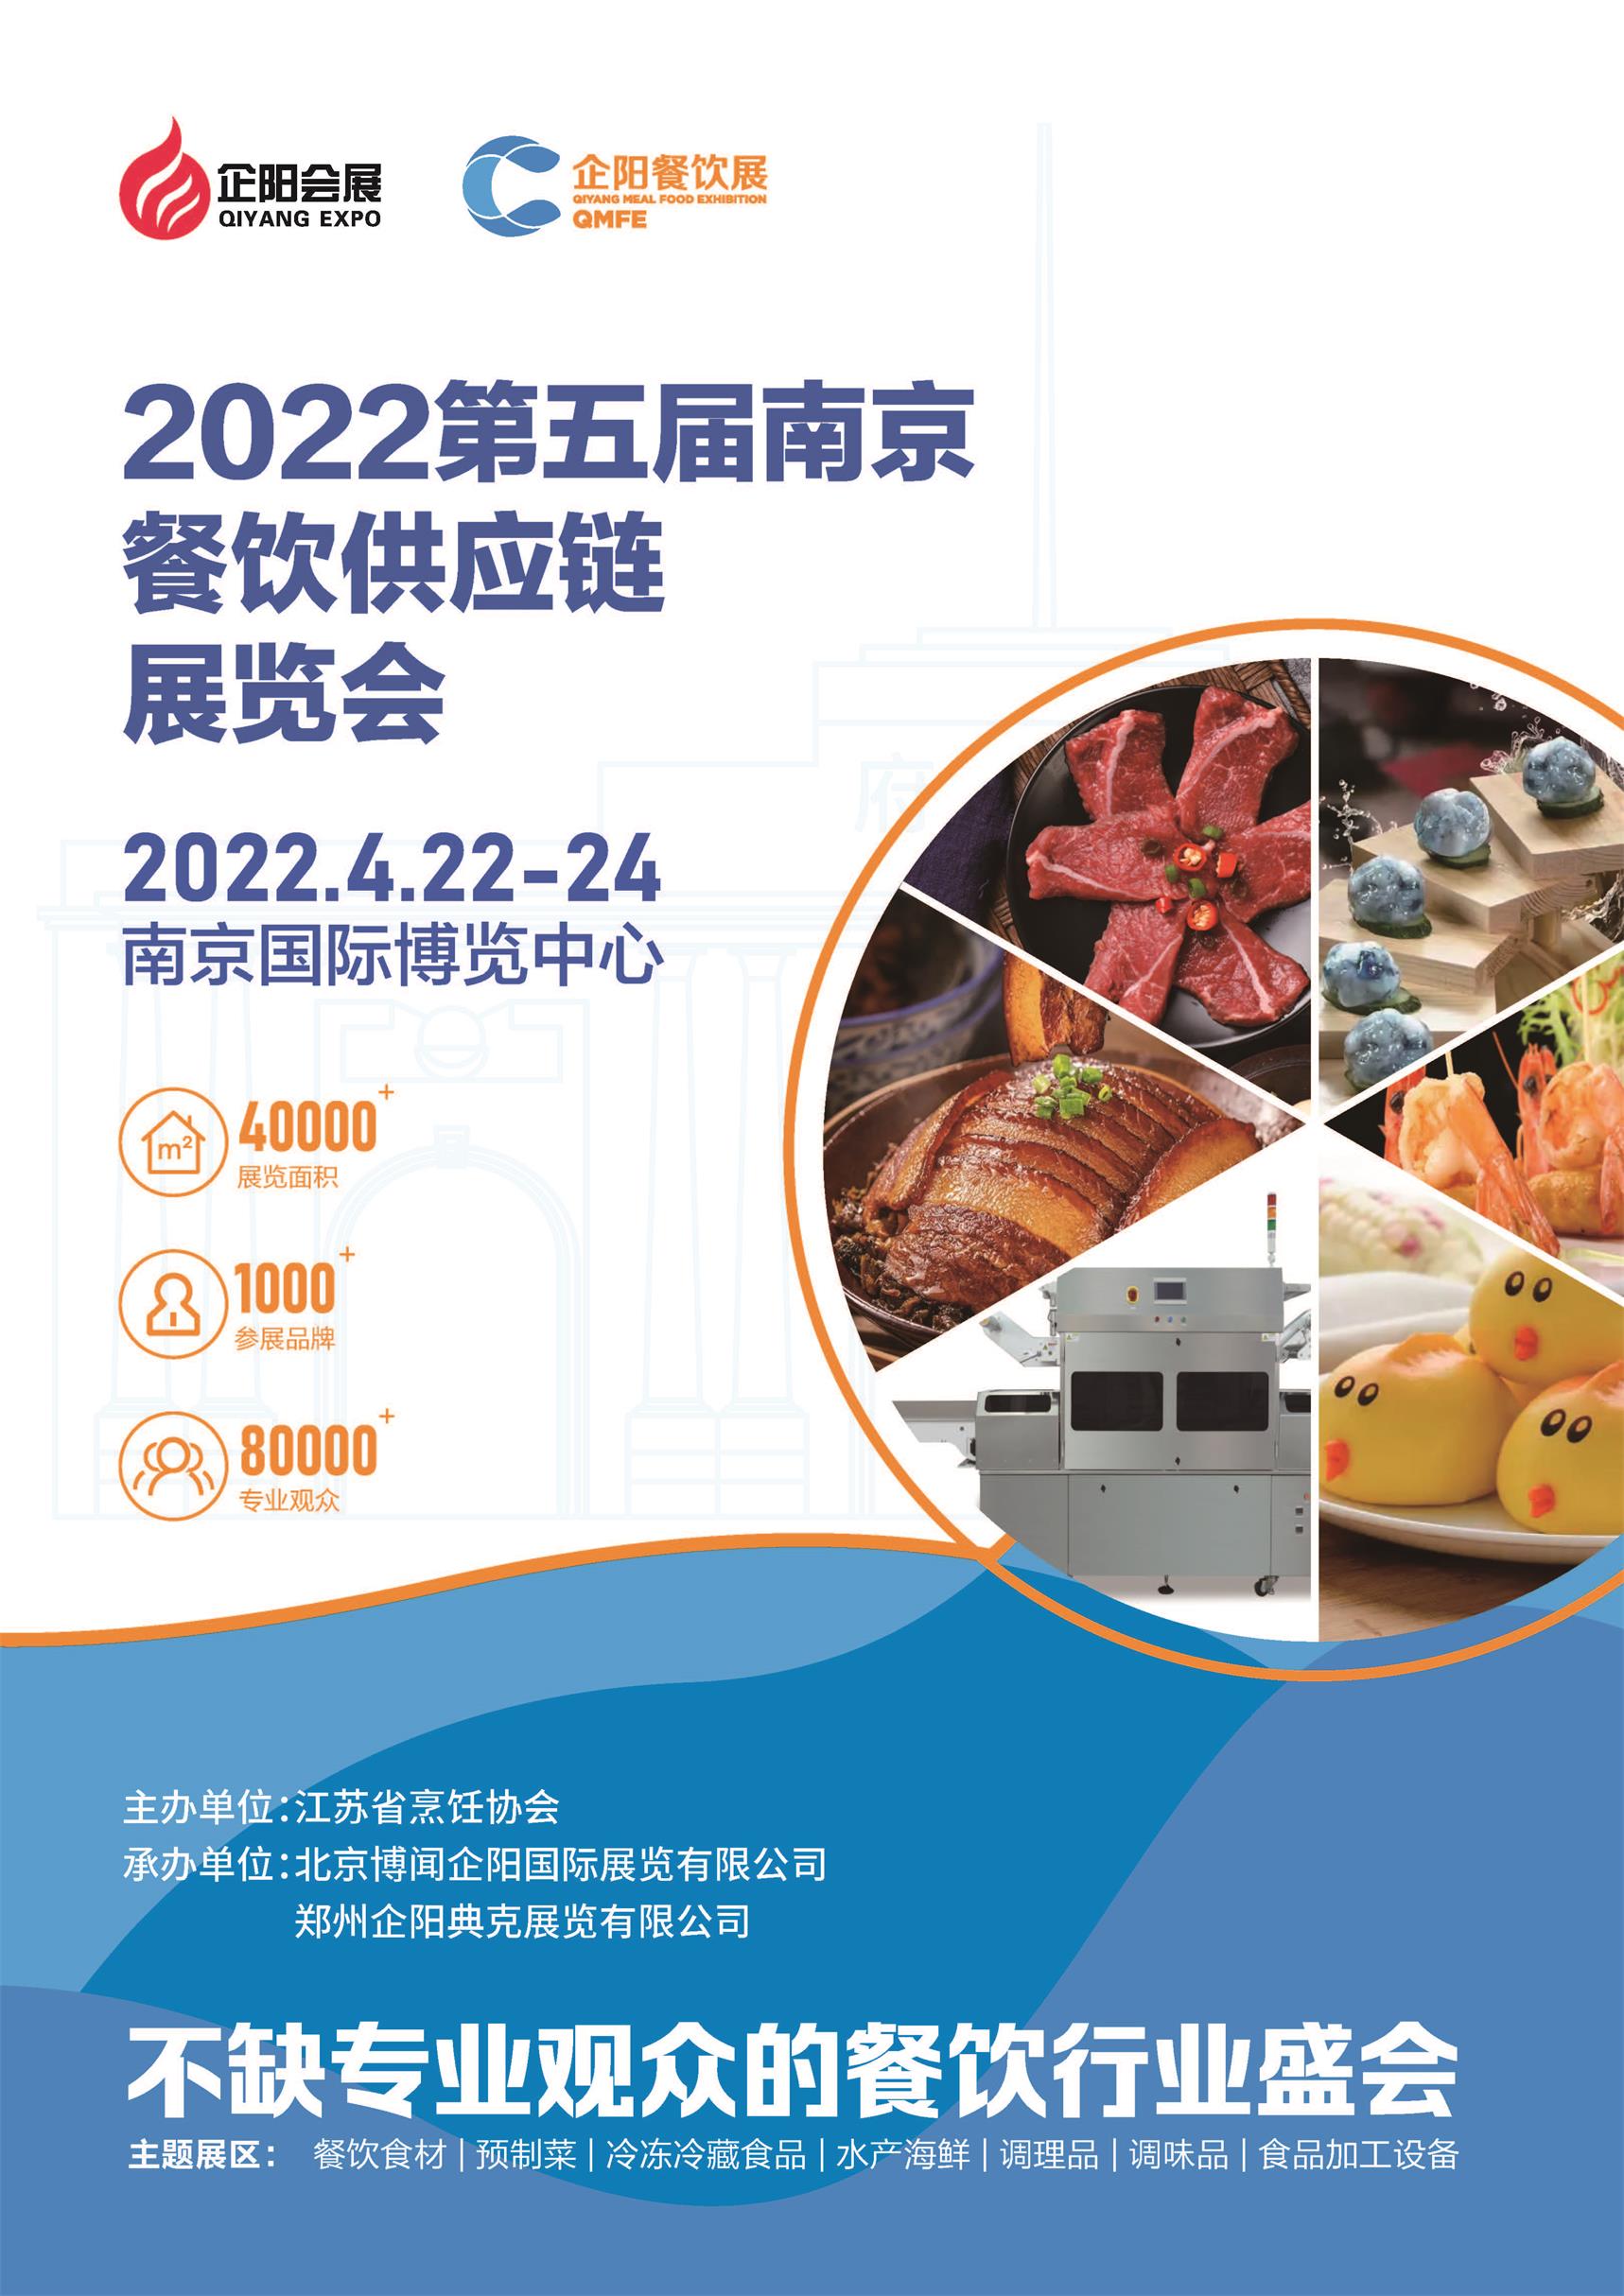 2022南京*五届餐饮供应链展览会